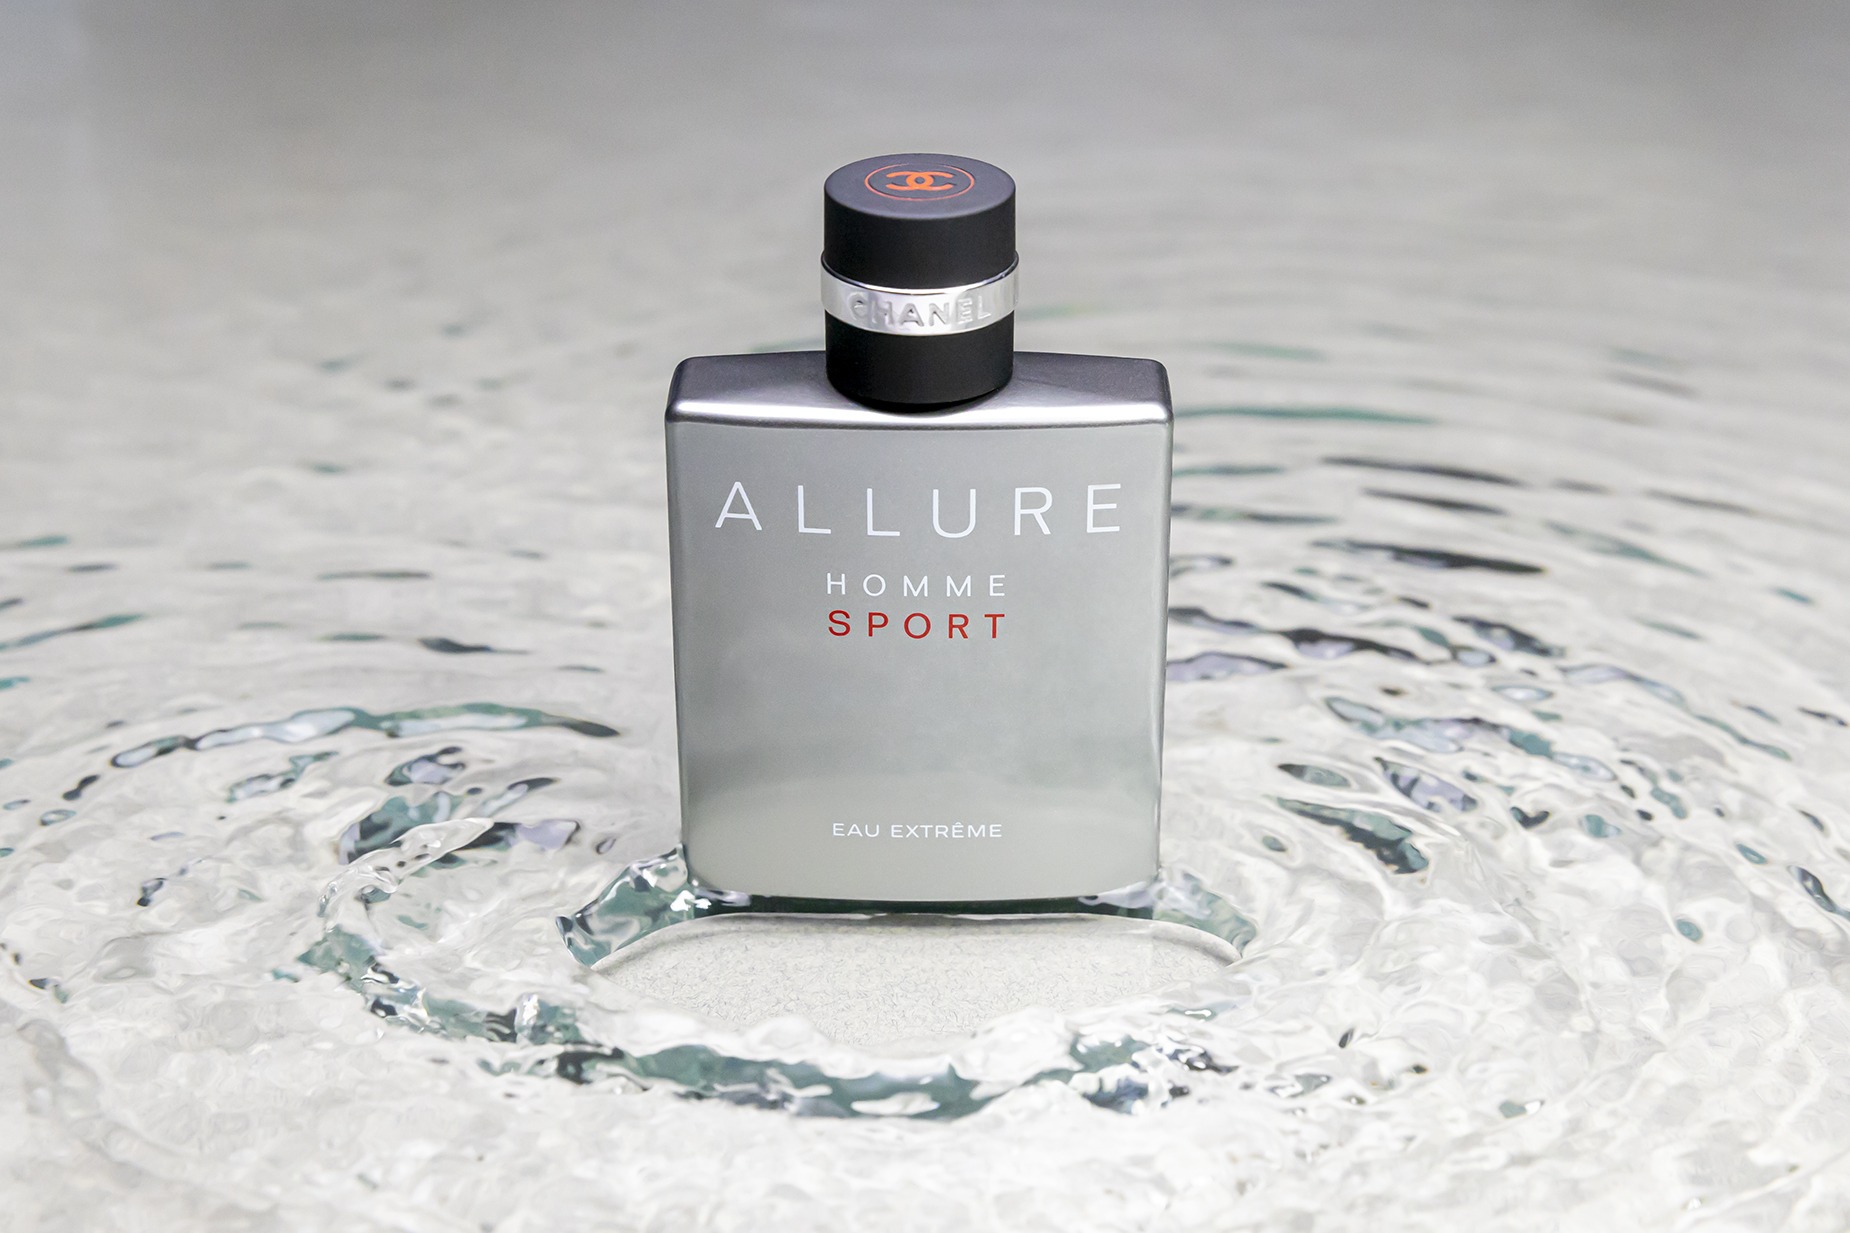 Parfum Channel Allure Homme Sport, photographie prise en studio dans un bac d'eau avec une texture sous l'eau et des petites vagues au pied de la bouteille de parfum.